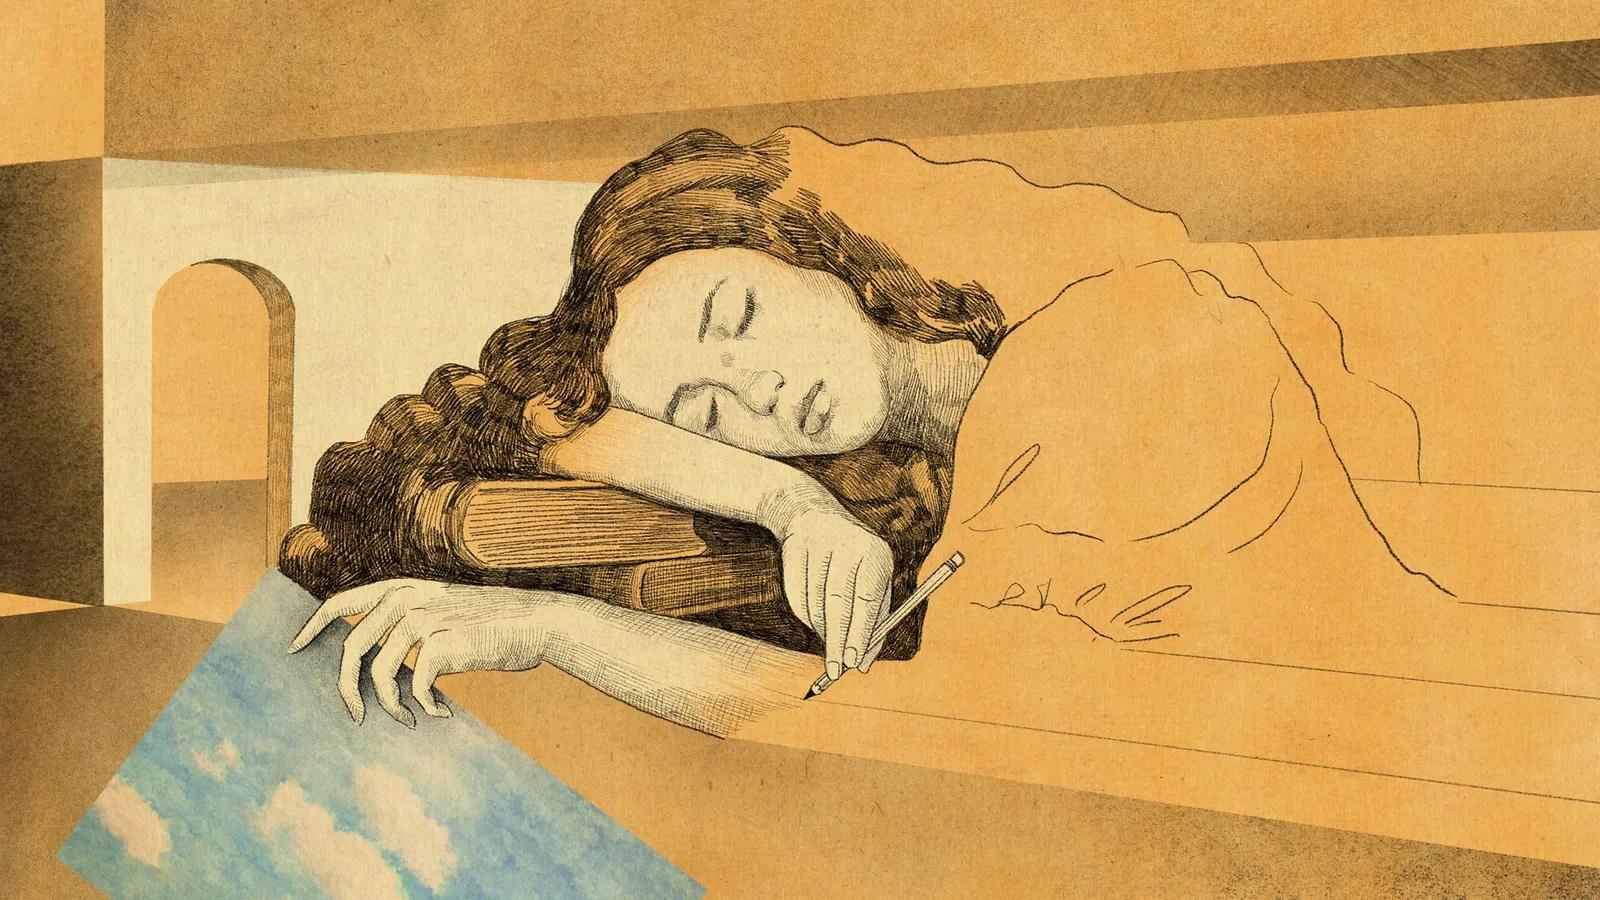 Ilustração representando sonho. Uma mulher é retratada se desenhando, deitada em um travesseiro de livros,enquanto segura uma folha com o desenho do céu